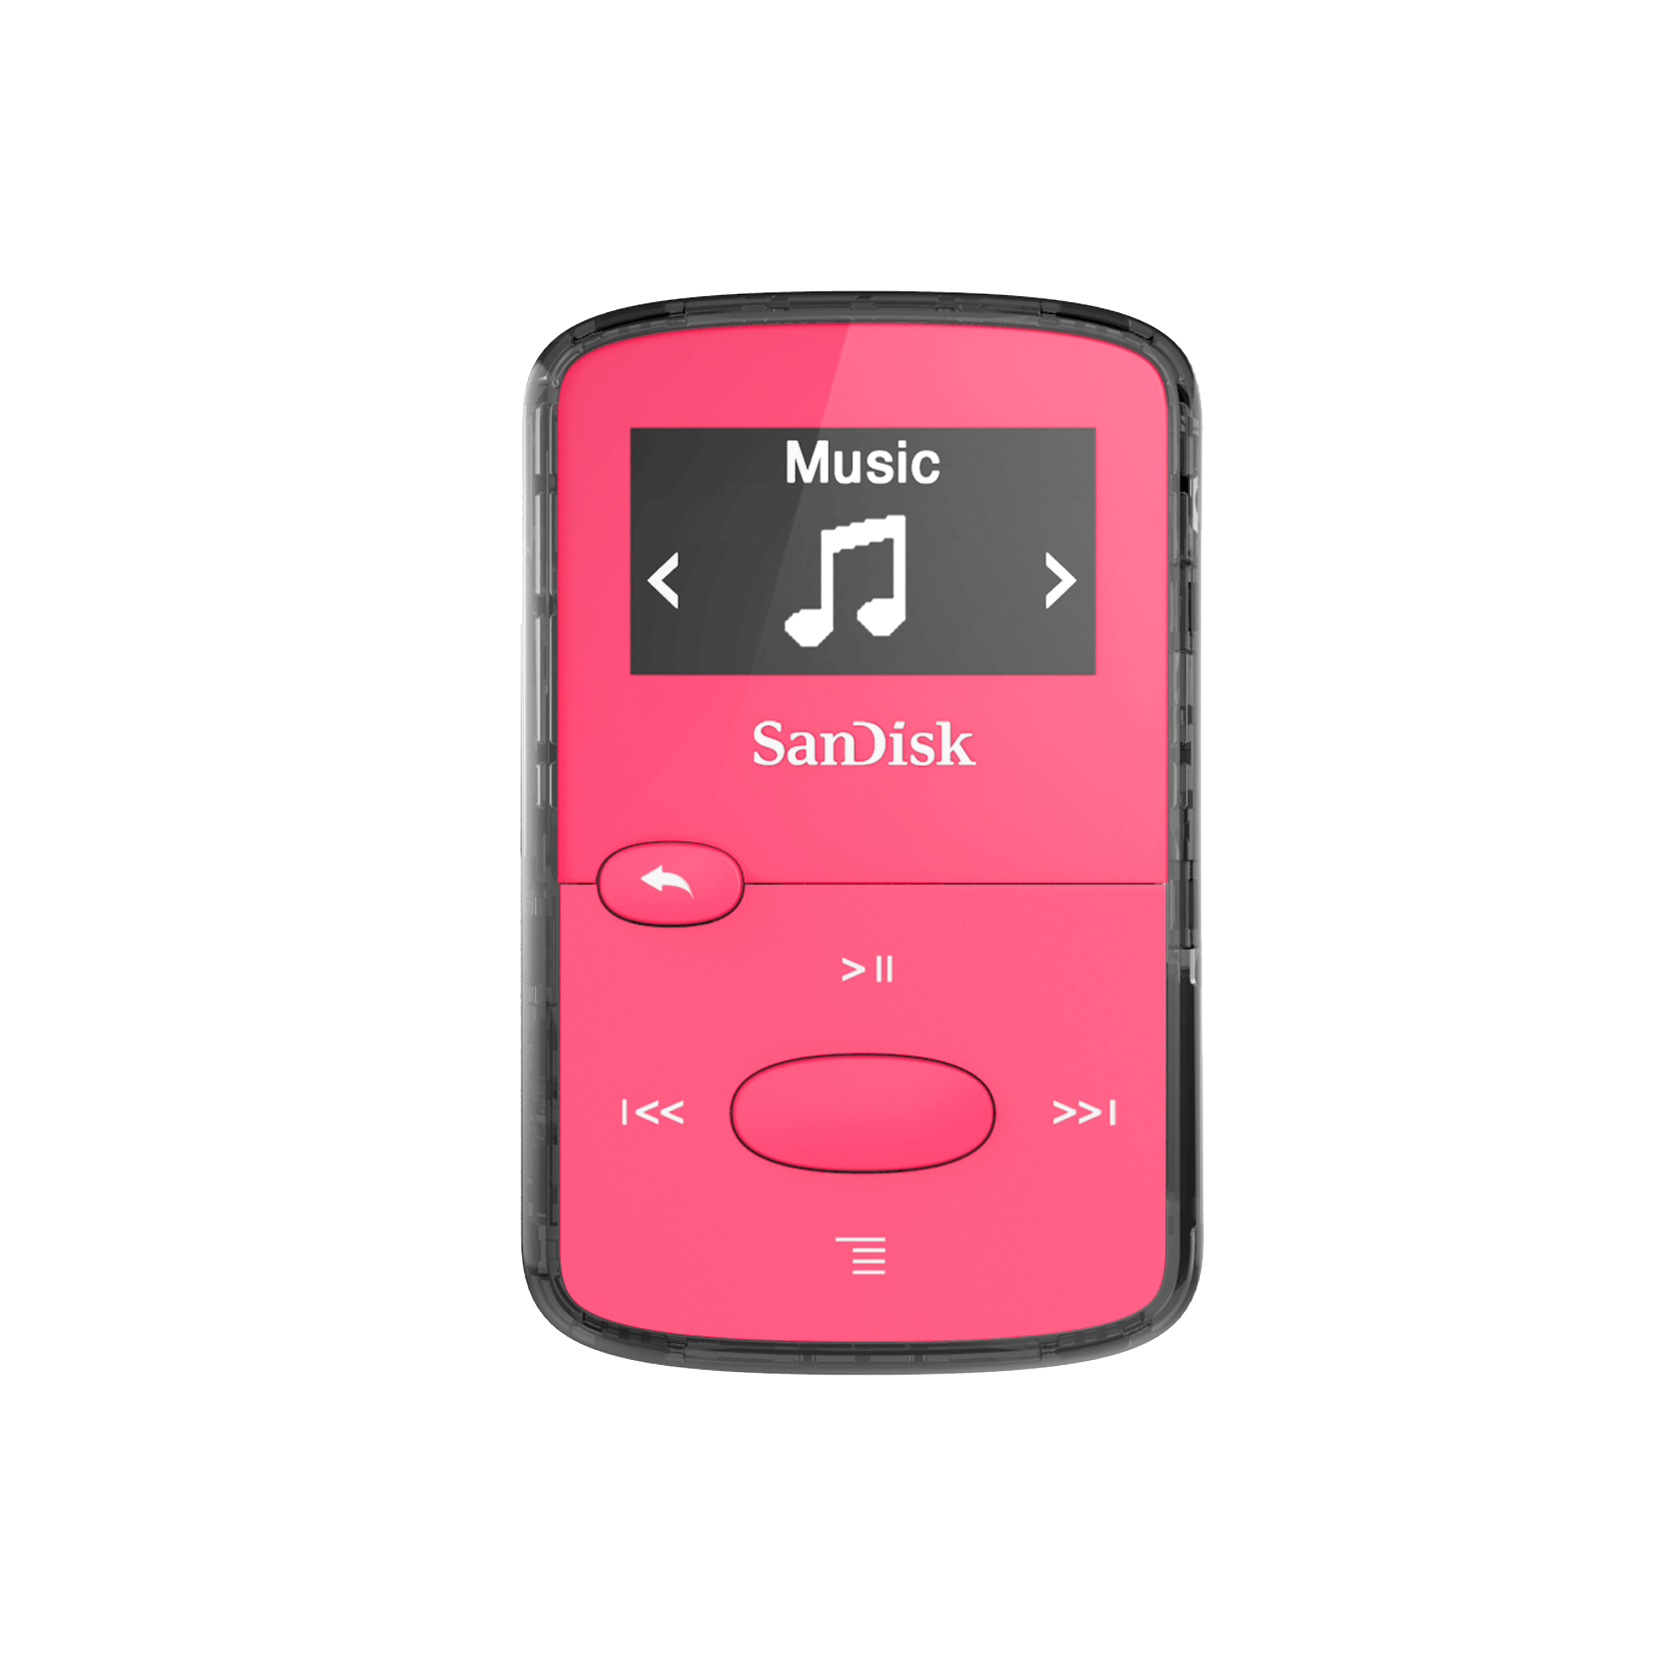 SanDisk Clip Jam MP3 Player 8GB, Pink - SDMX26-008G-E46P